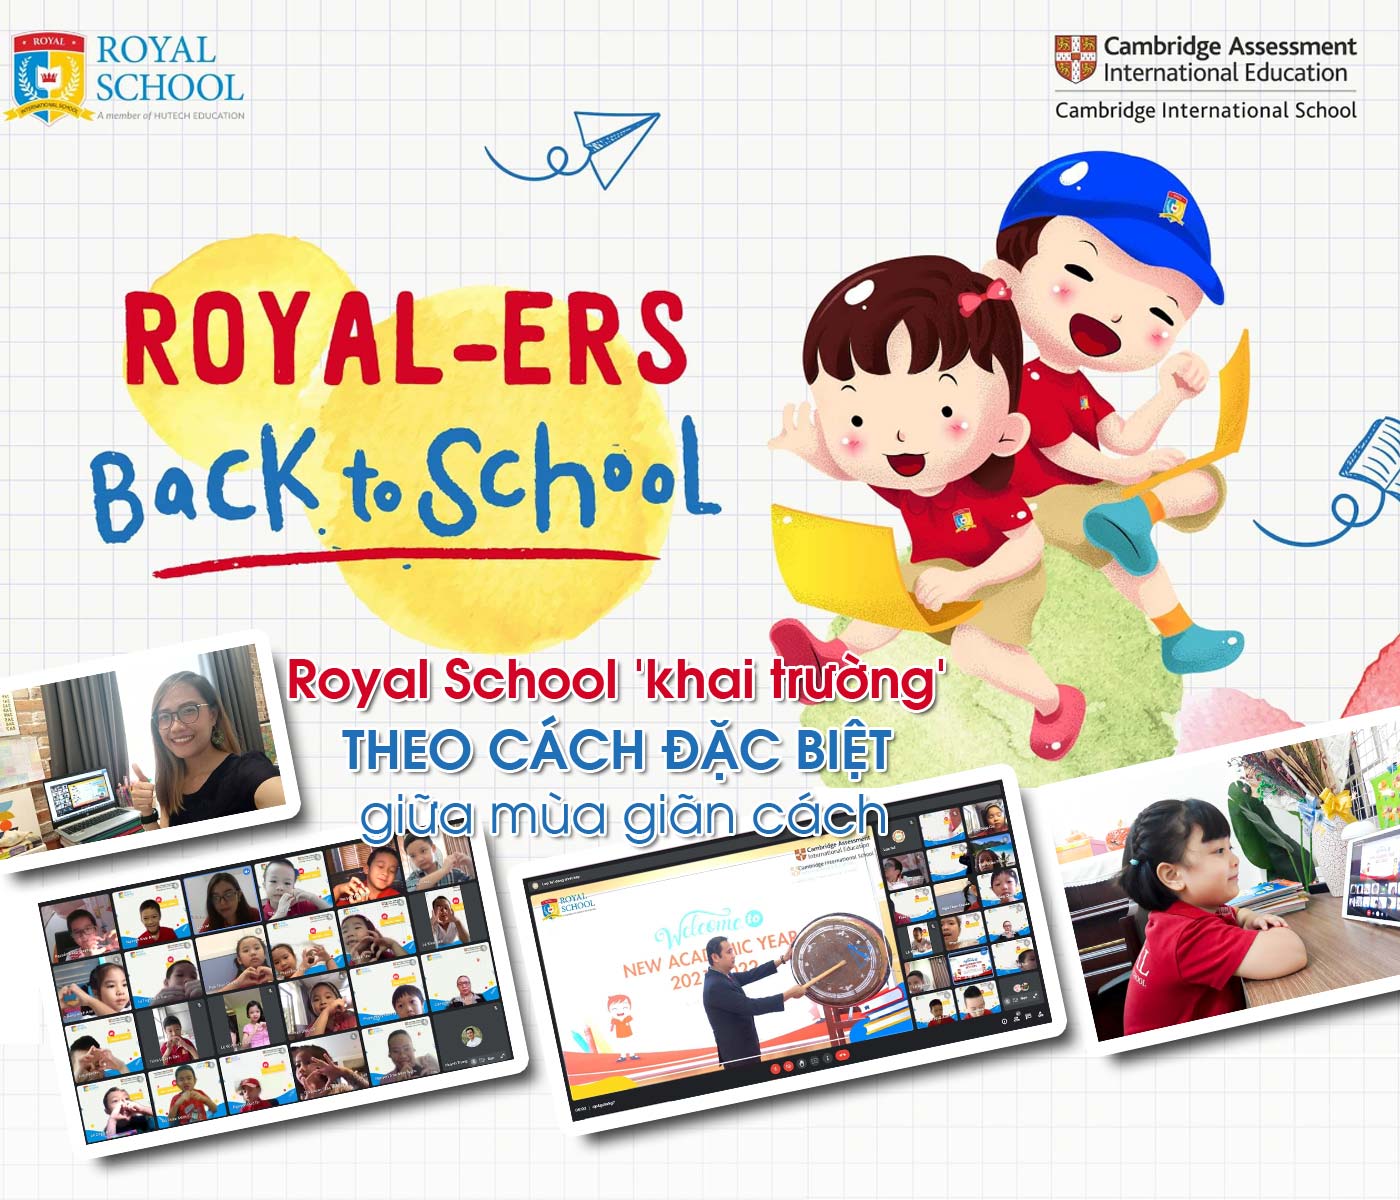 Royal School 'khai trường' theo cách đặc biệt giữa mùa giãn cách - Ảnh 1